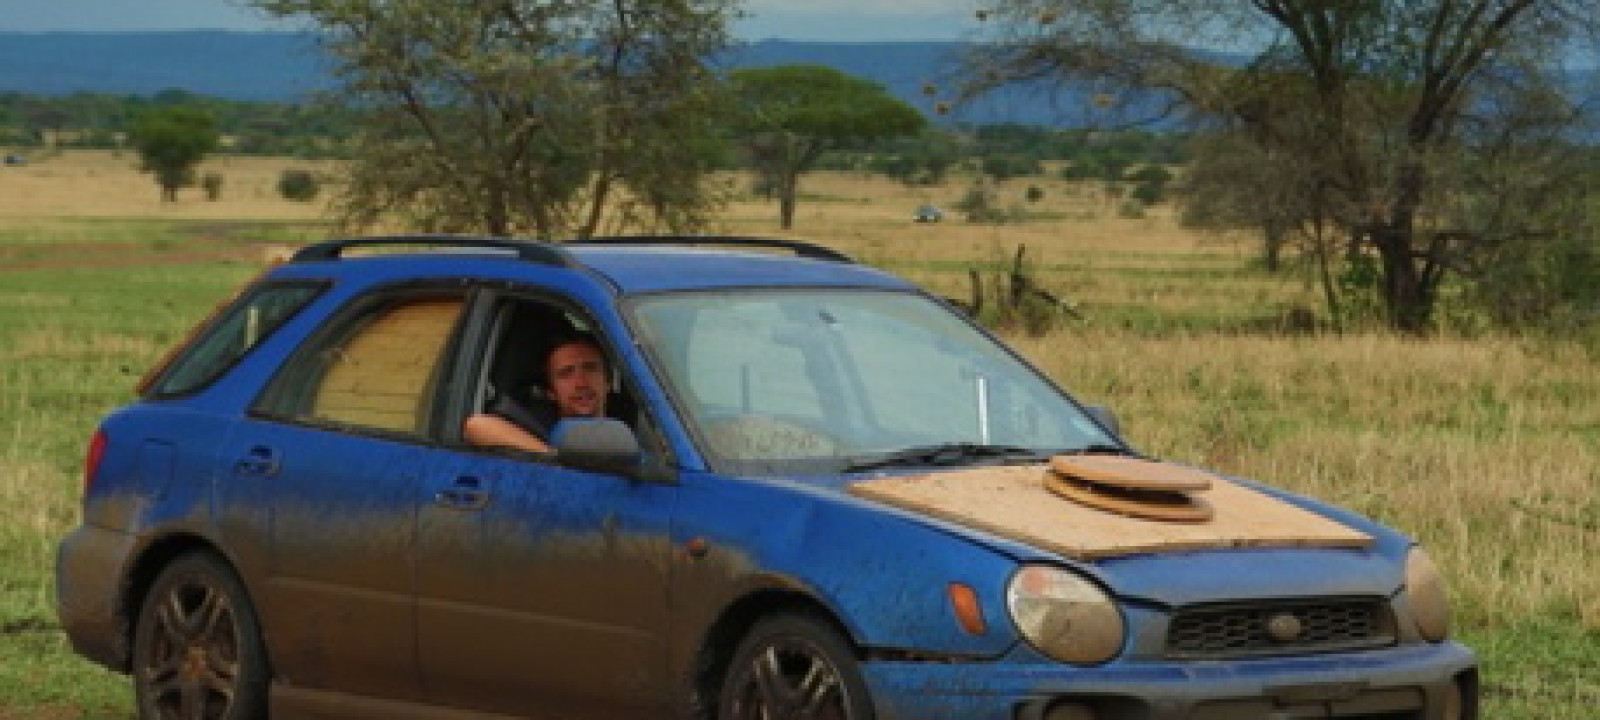 Top Gear Thursday Africa Trip Revives Subaru Impreza’s